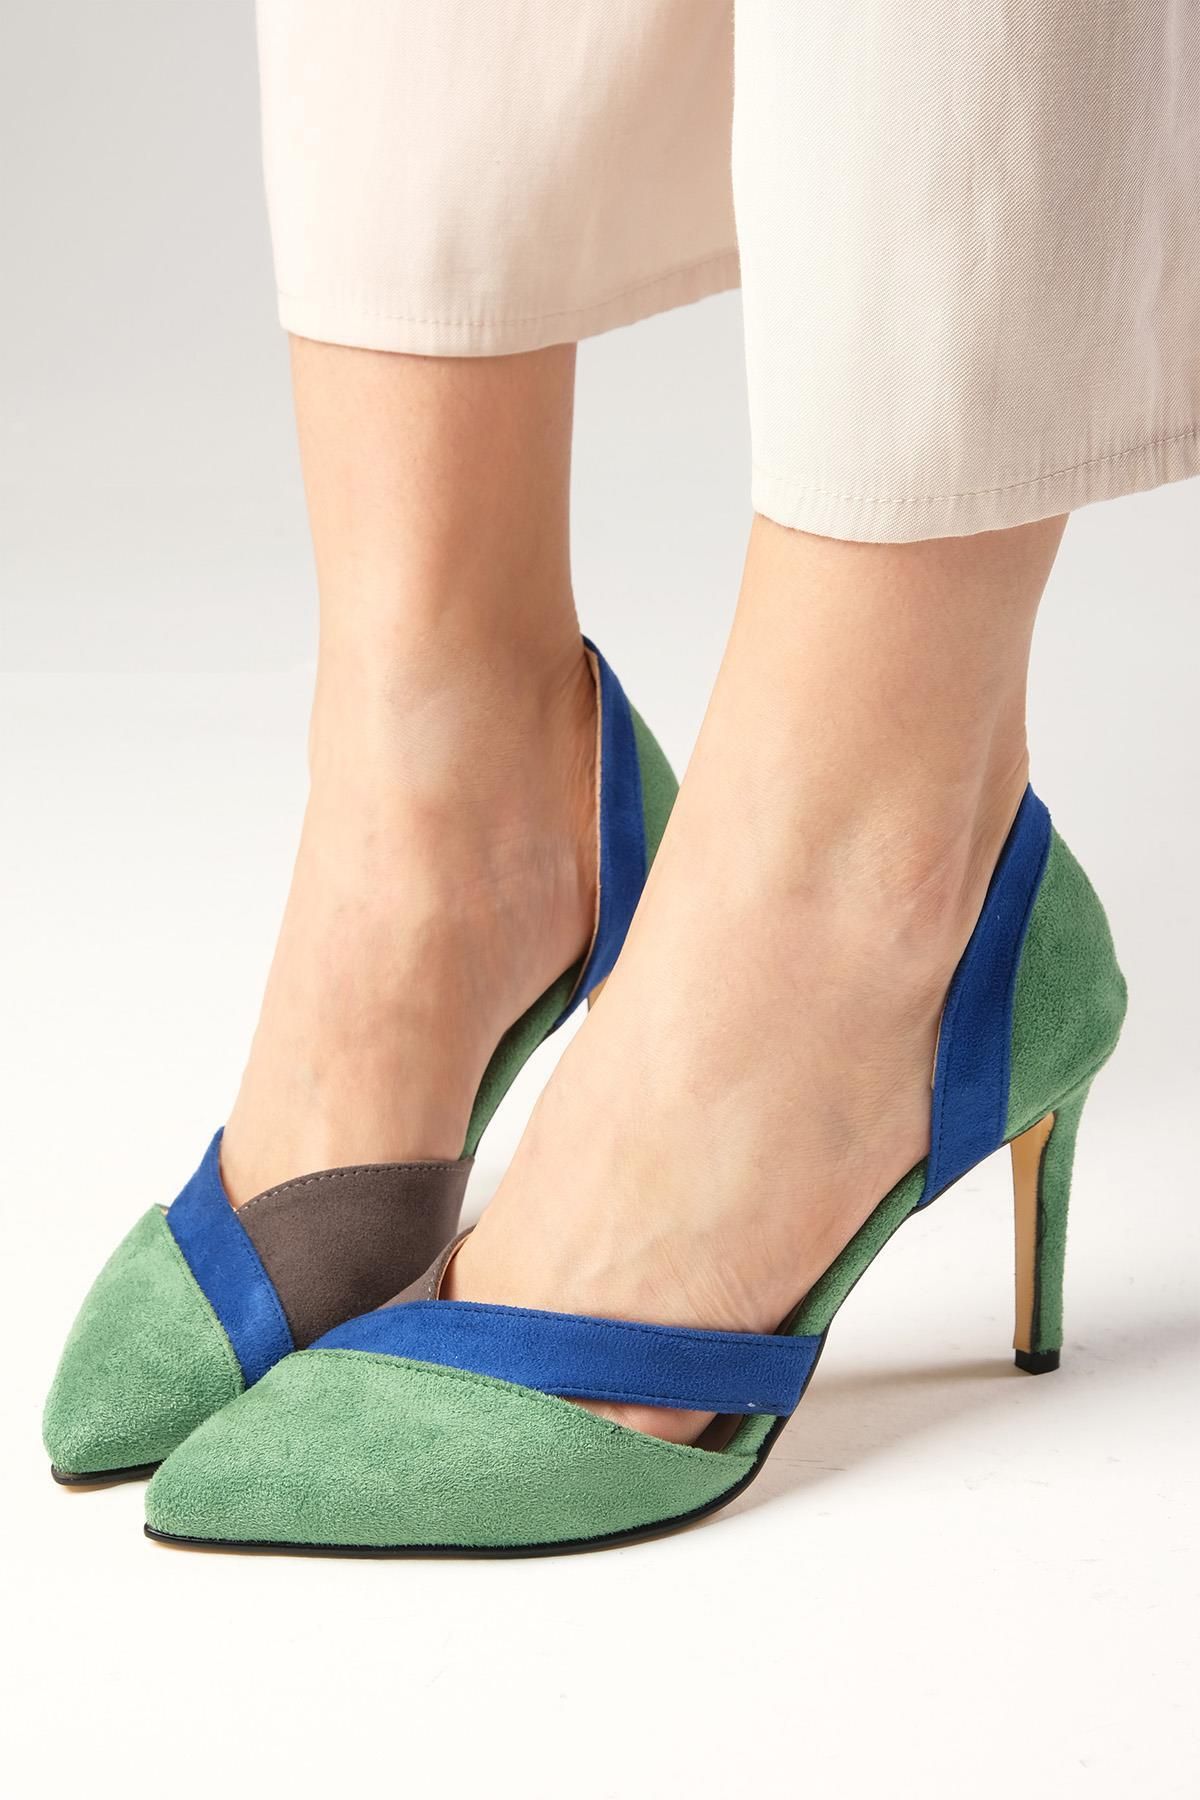 Mio Gusto Yeşil Renk Süet Renk Bloklu Kadın Stiletto Topuklu Ayakkabı